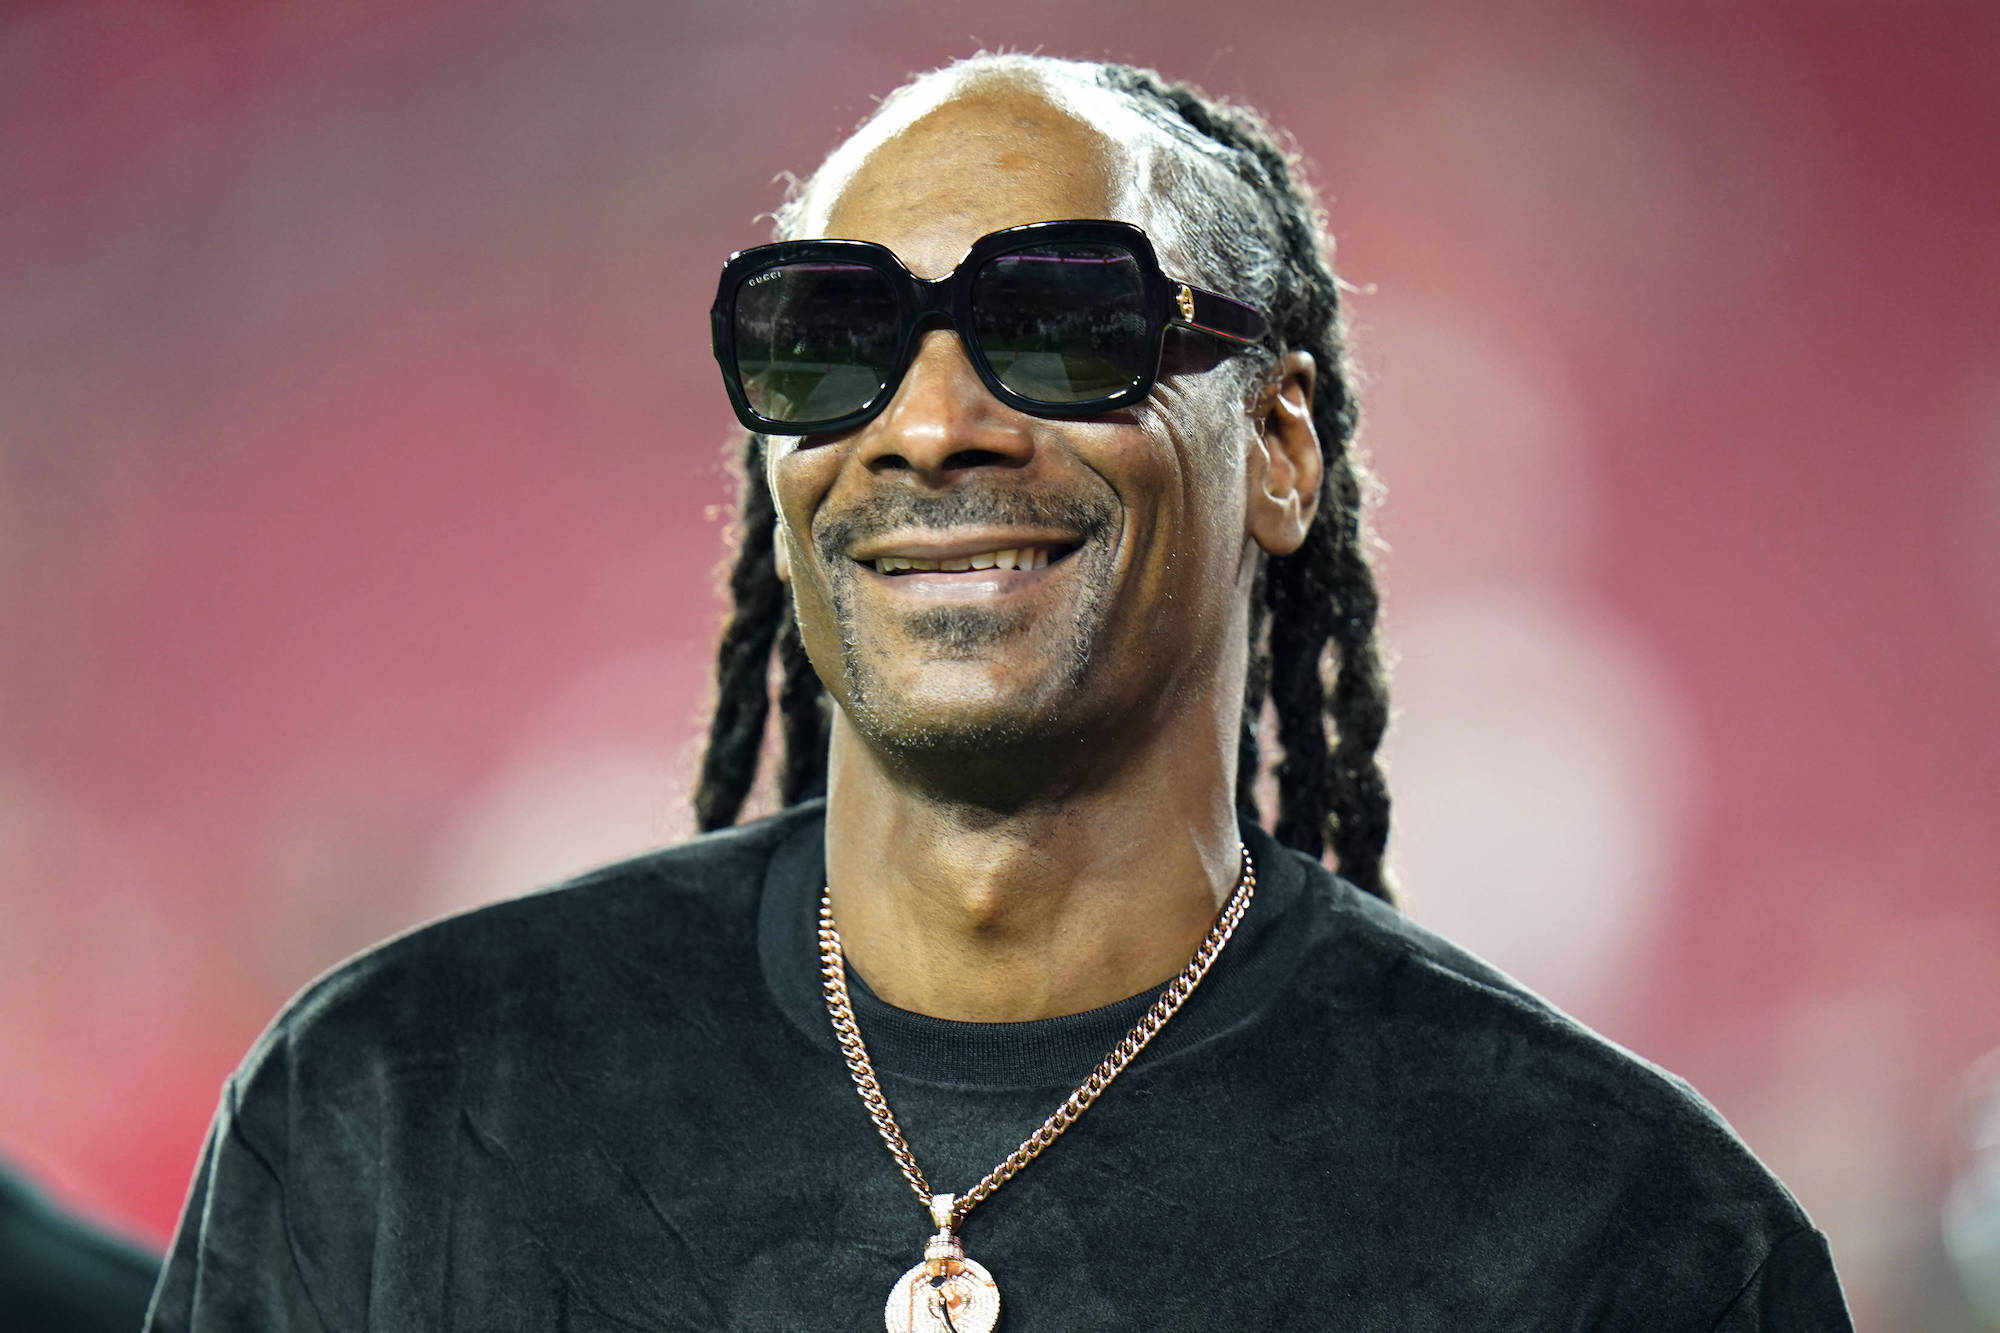 Snoop Dogg : La danseuse qui l'accuse d'agression sexuelle retire sa plainte